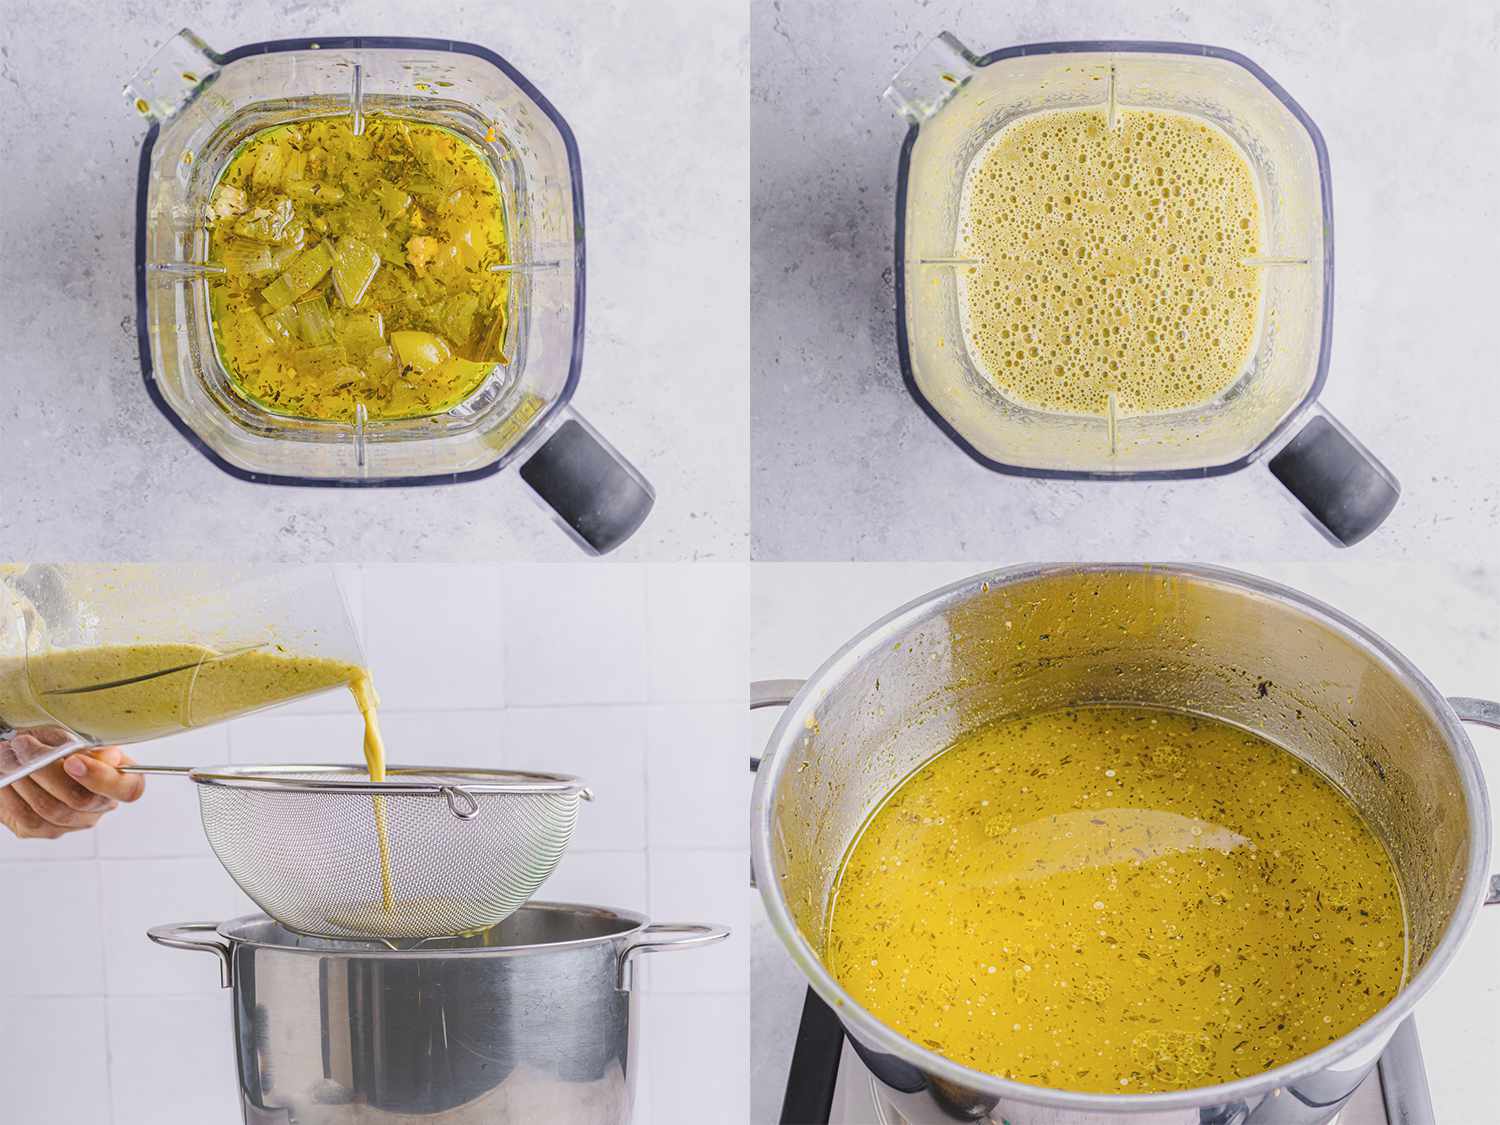 四图像拼贴。左上:未混合的高汤在搅拌机里。右上:在搅拌器中混合的高汤。左下:将高汤通过过滤器倒回锅中。右下:在锅中完成的高汤gydF4y2Ba